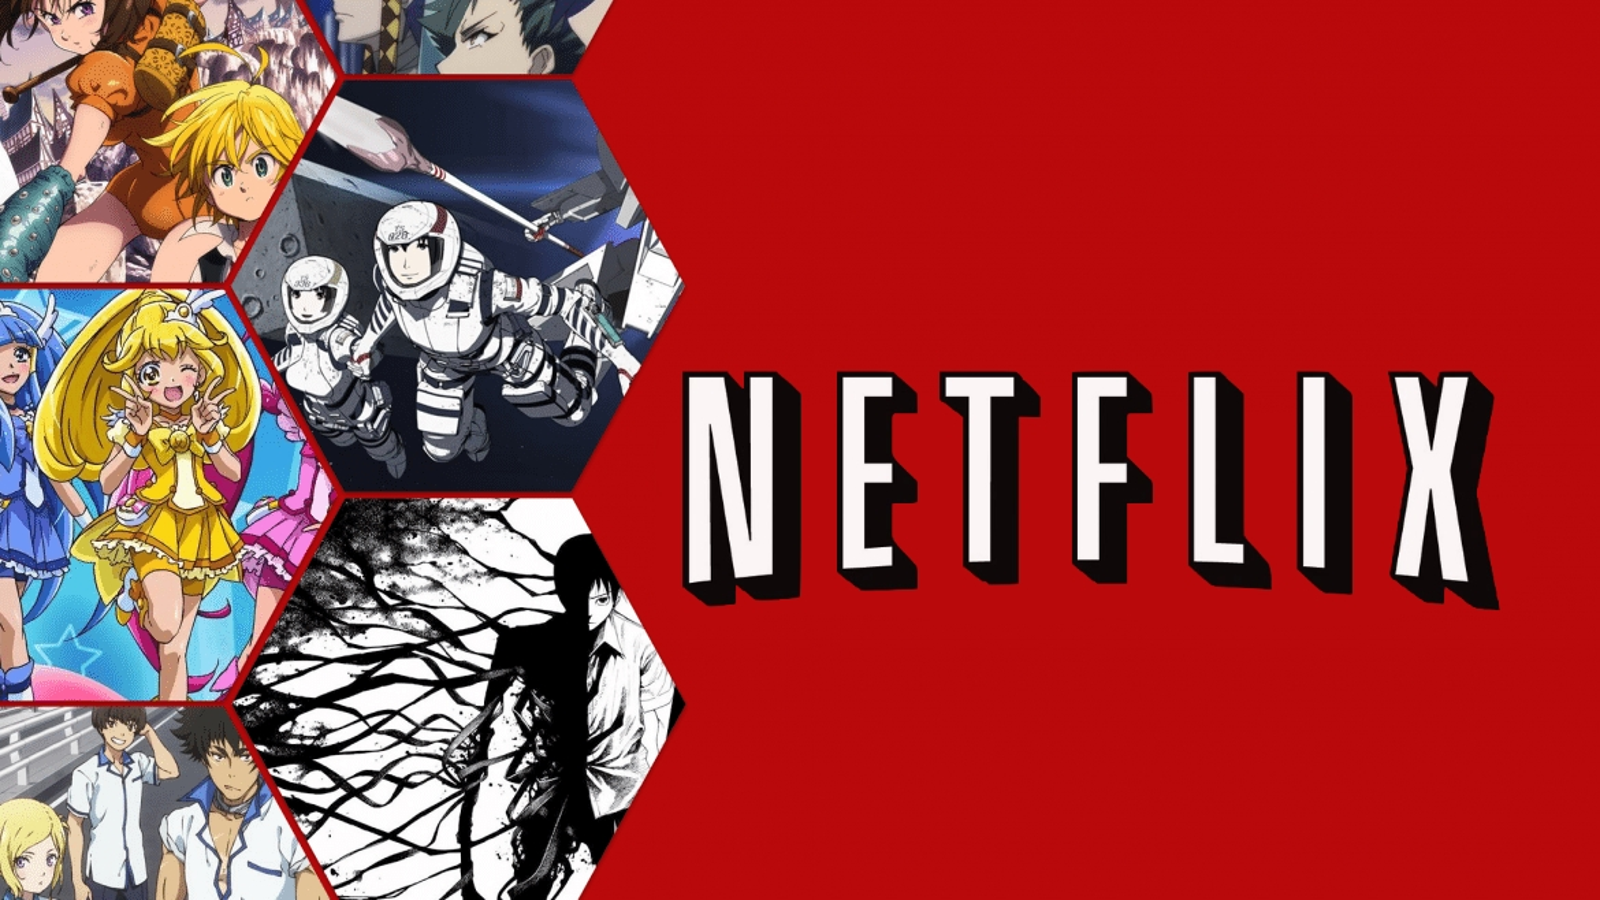 Netflix aposta sucesso na produção de animes para 2021 - Canaltech